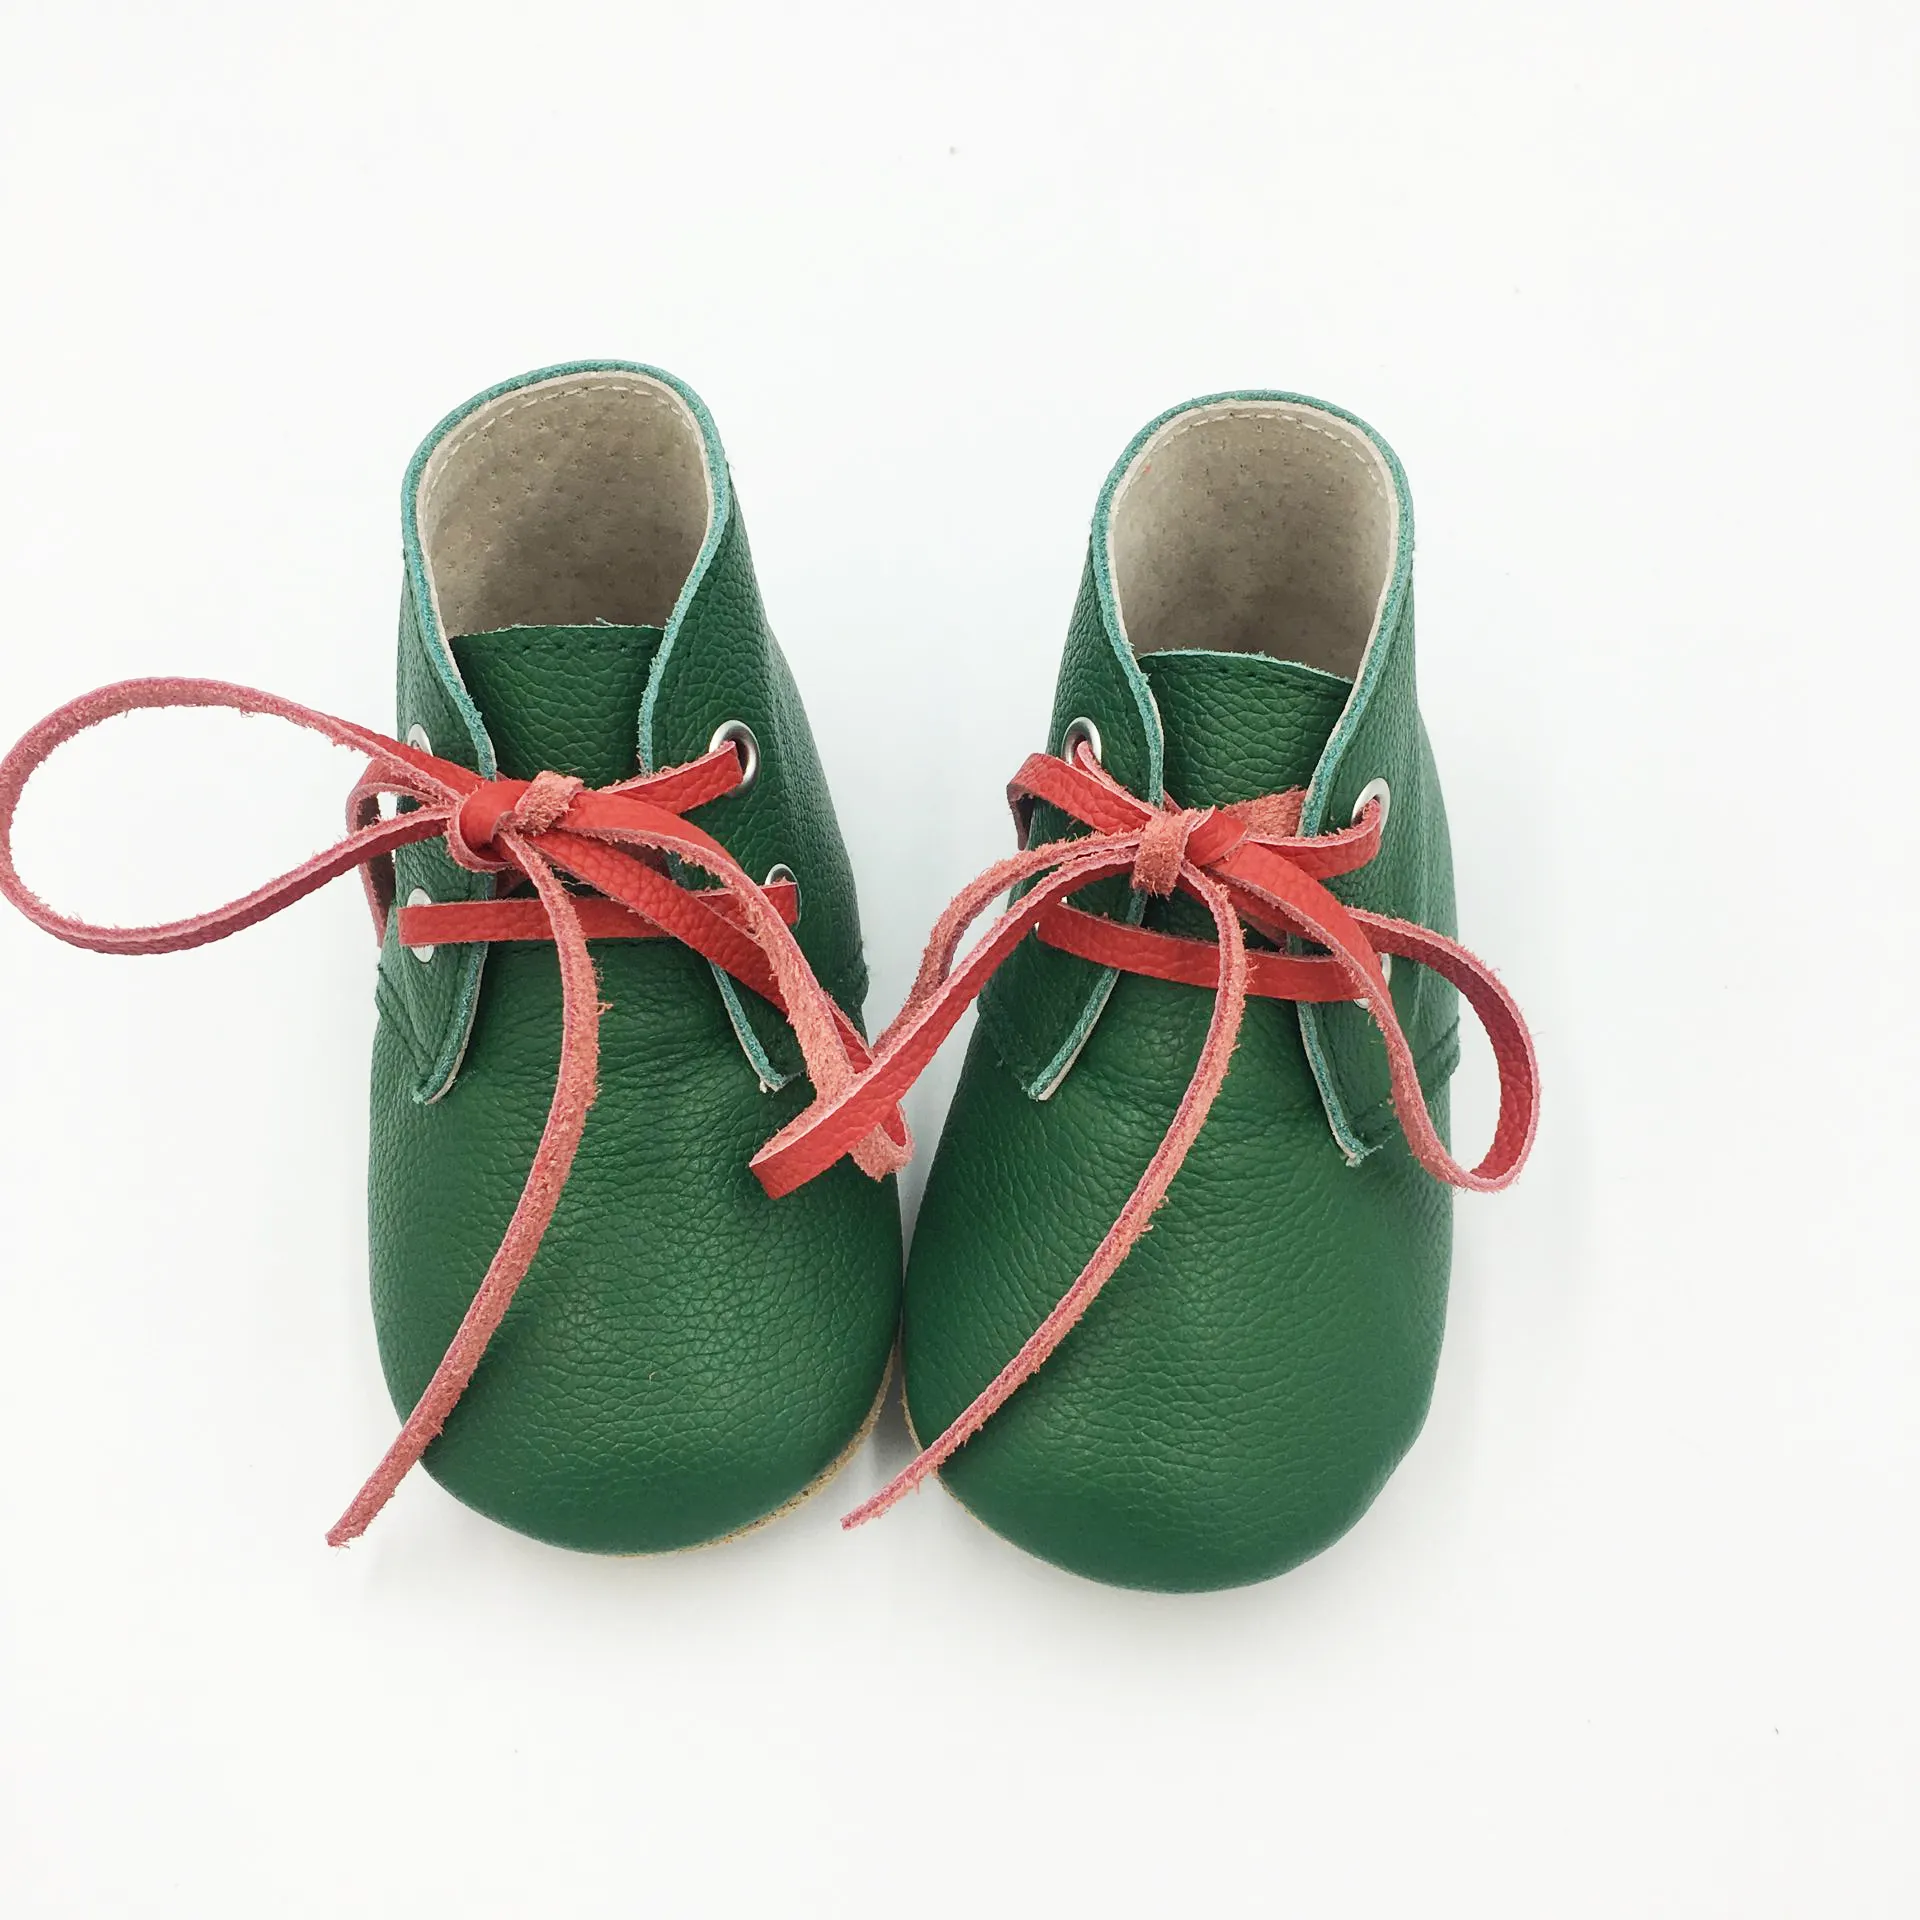 הנמכר ביותר יד סריגה תינוק נעליים סיטונאי בנות זמש עור מגפיים